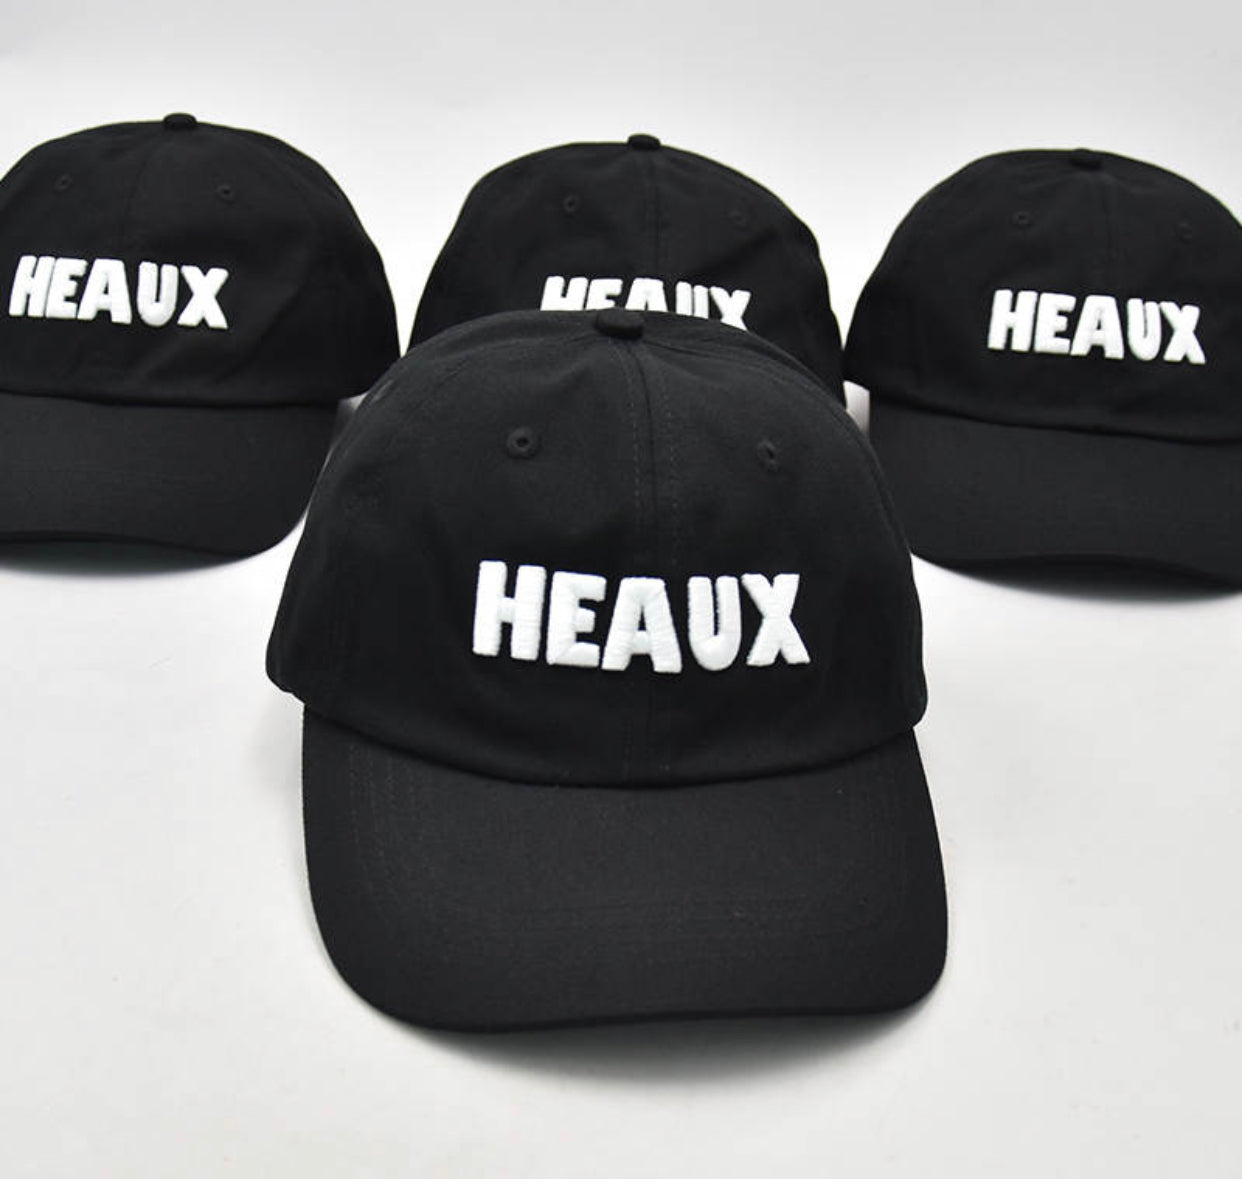 The “Heauxmie Hopper” Hat